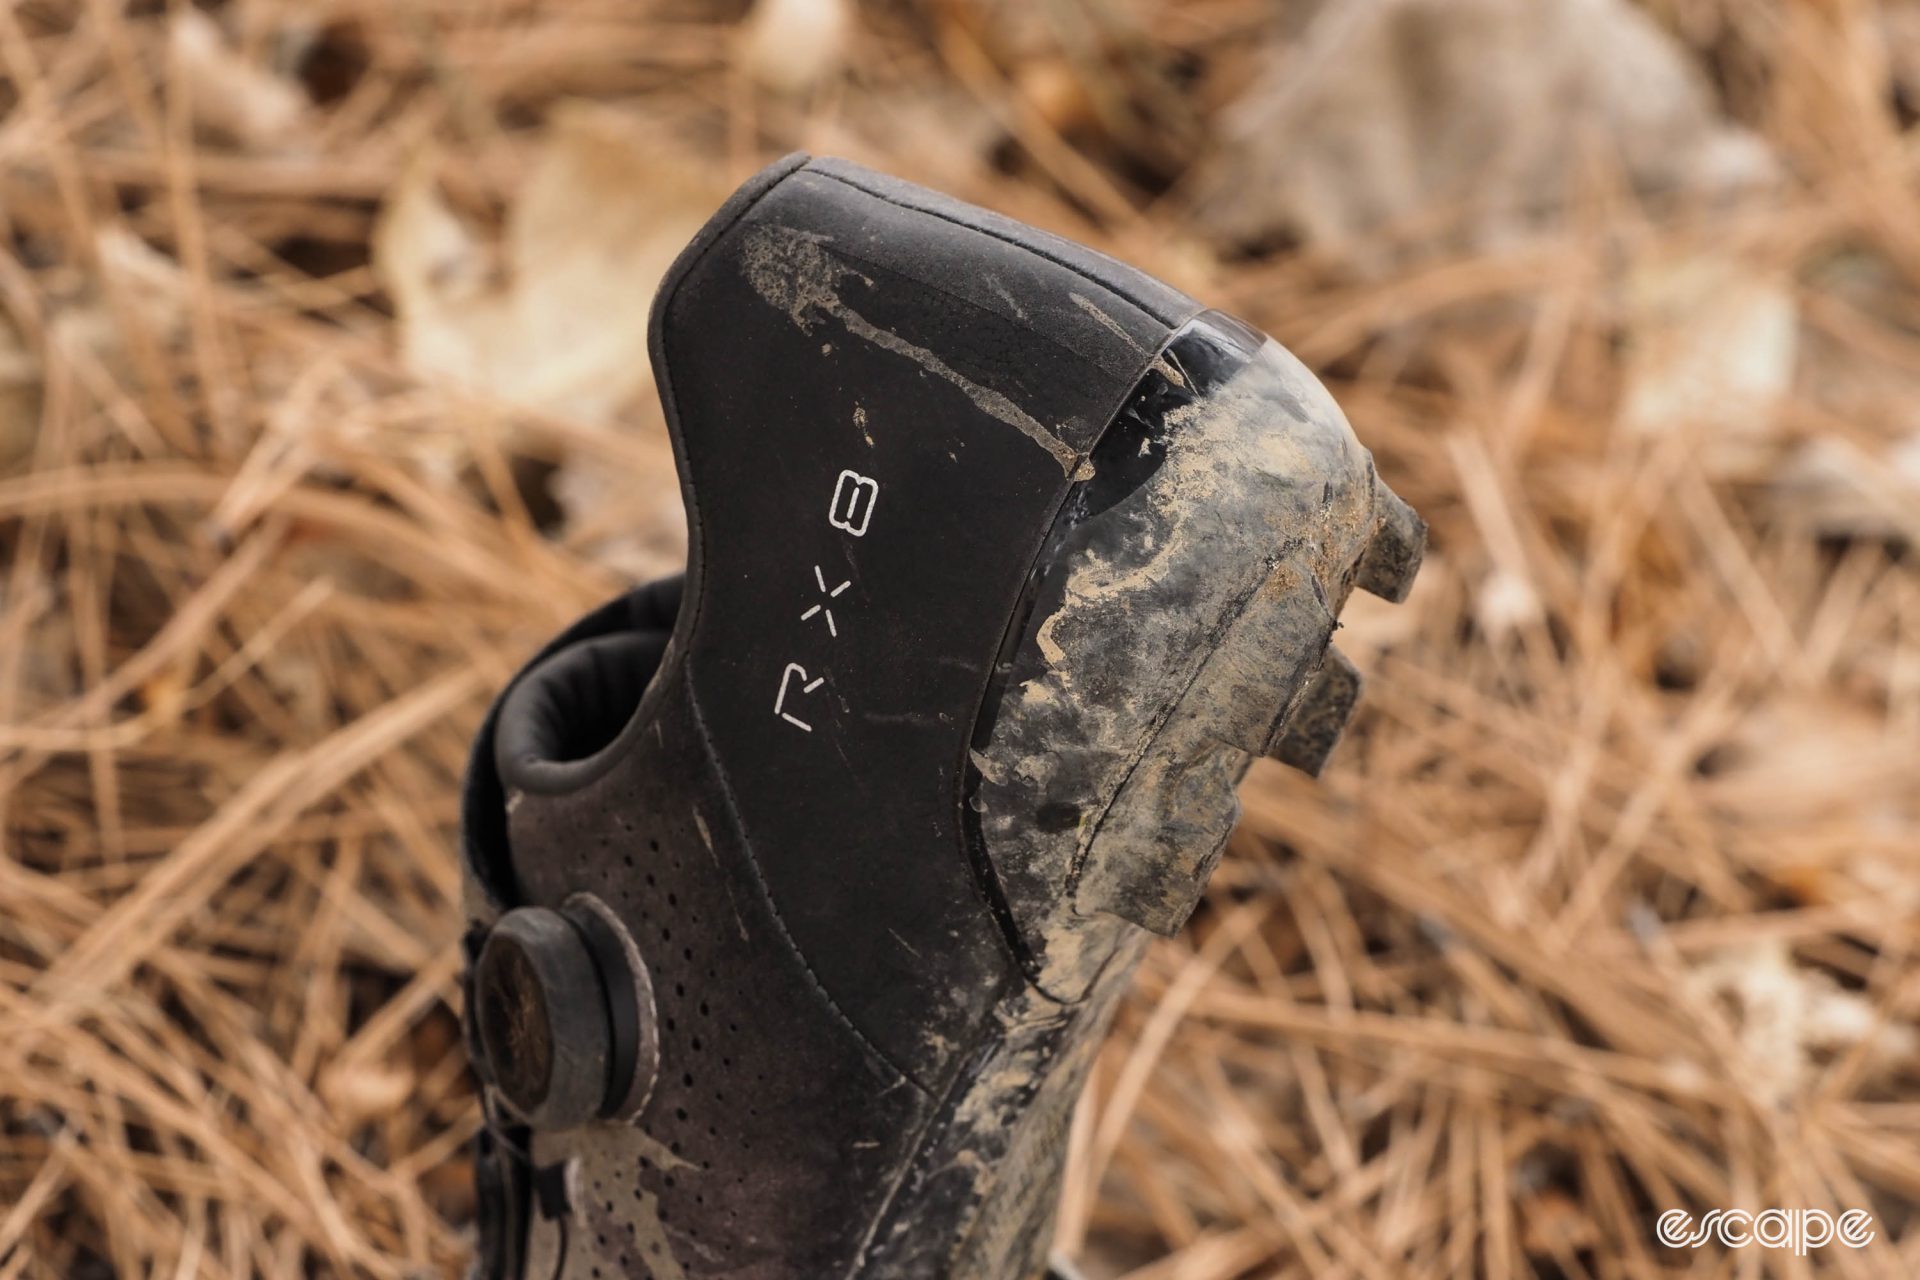 Shimano RX8 gravel shoe heel cup armoring